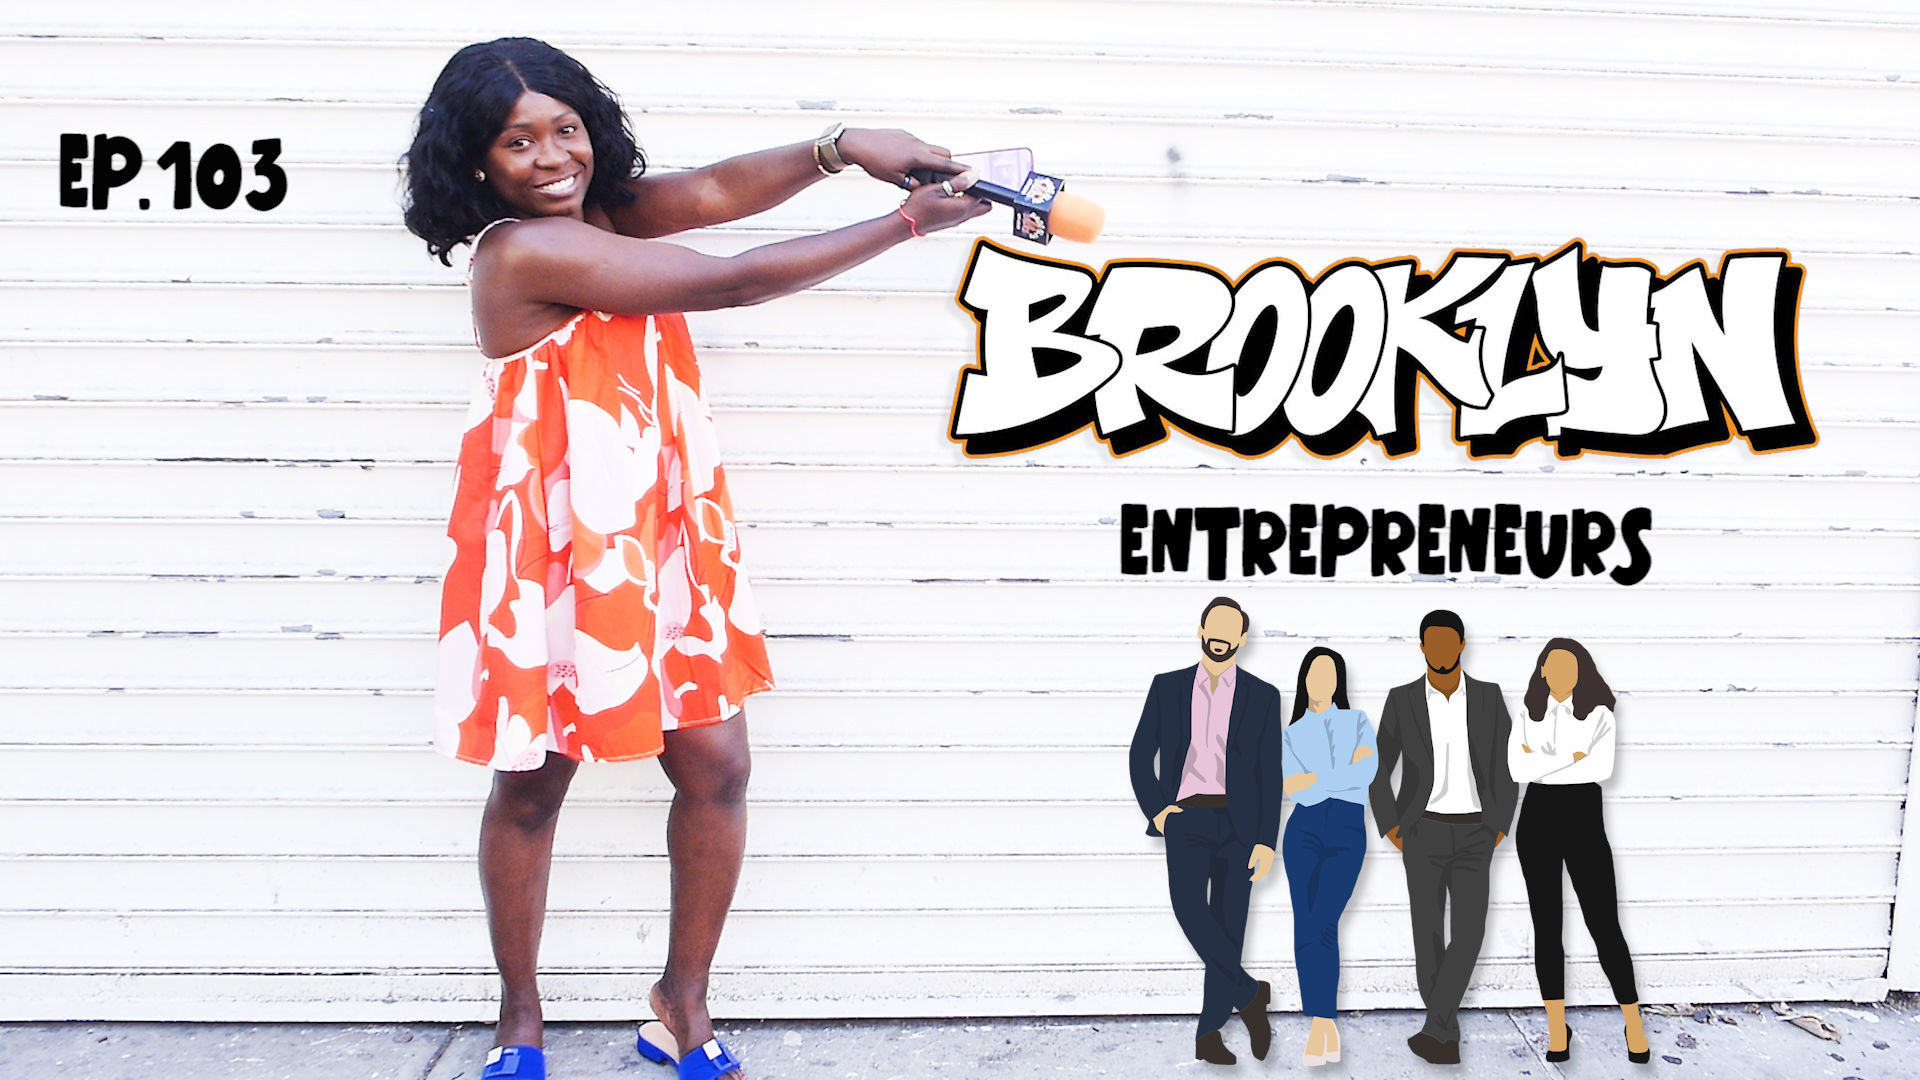 Local 2 Local: Brooklyn Sidewalk Entrepreneurs